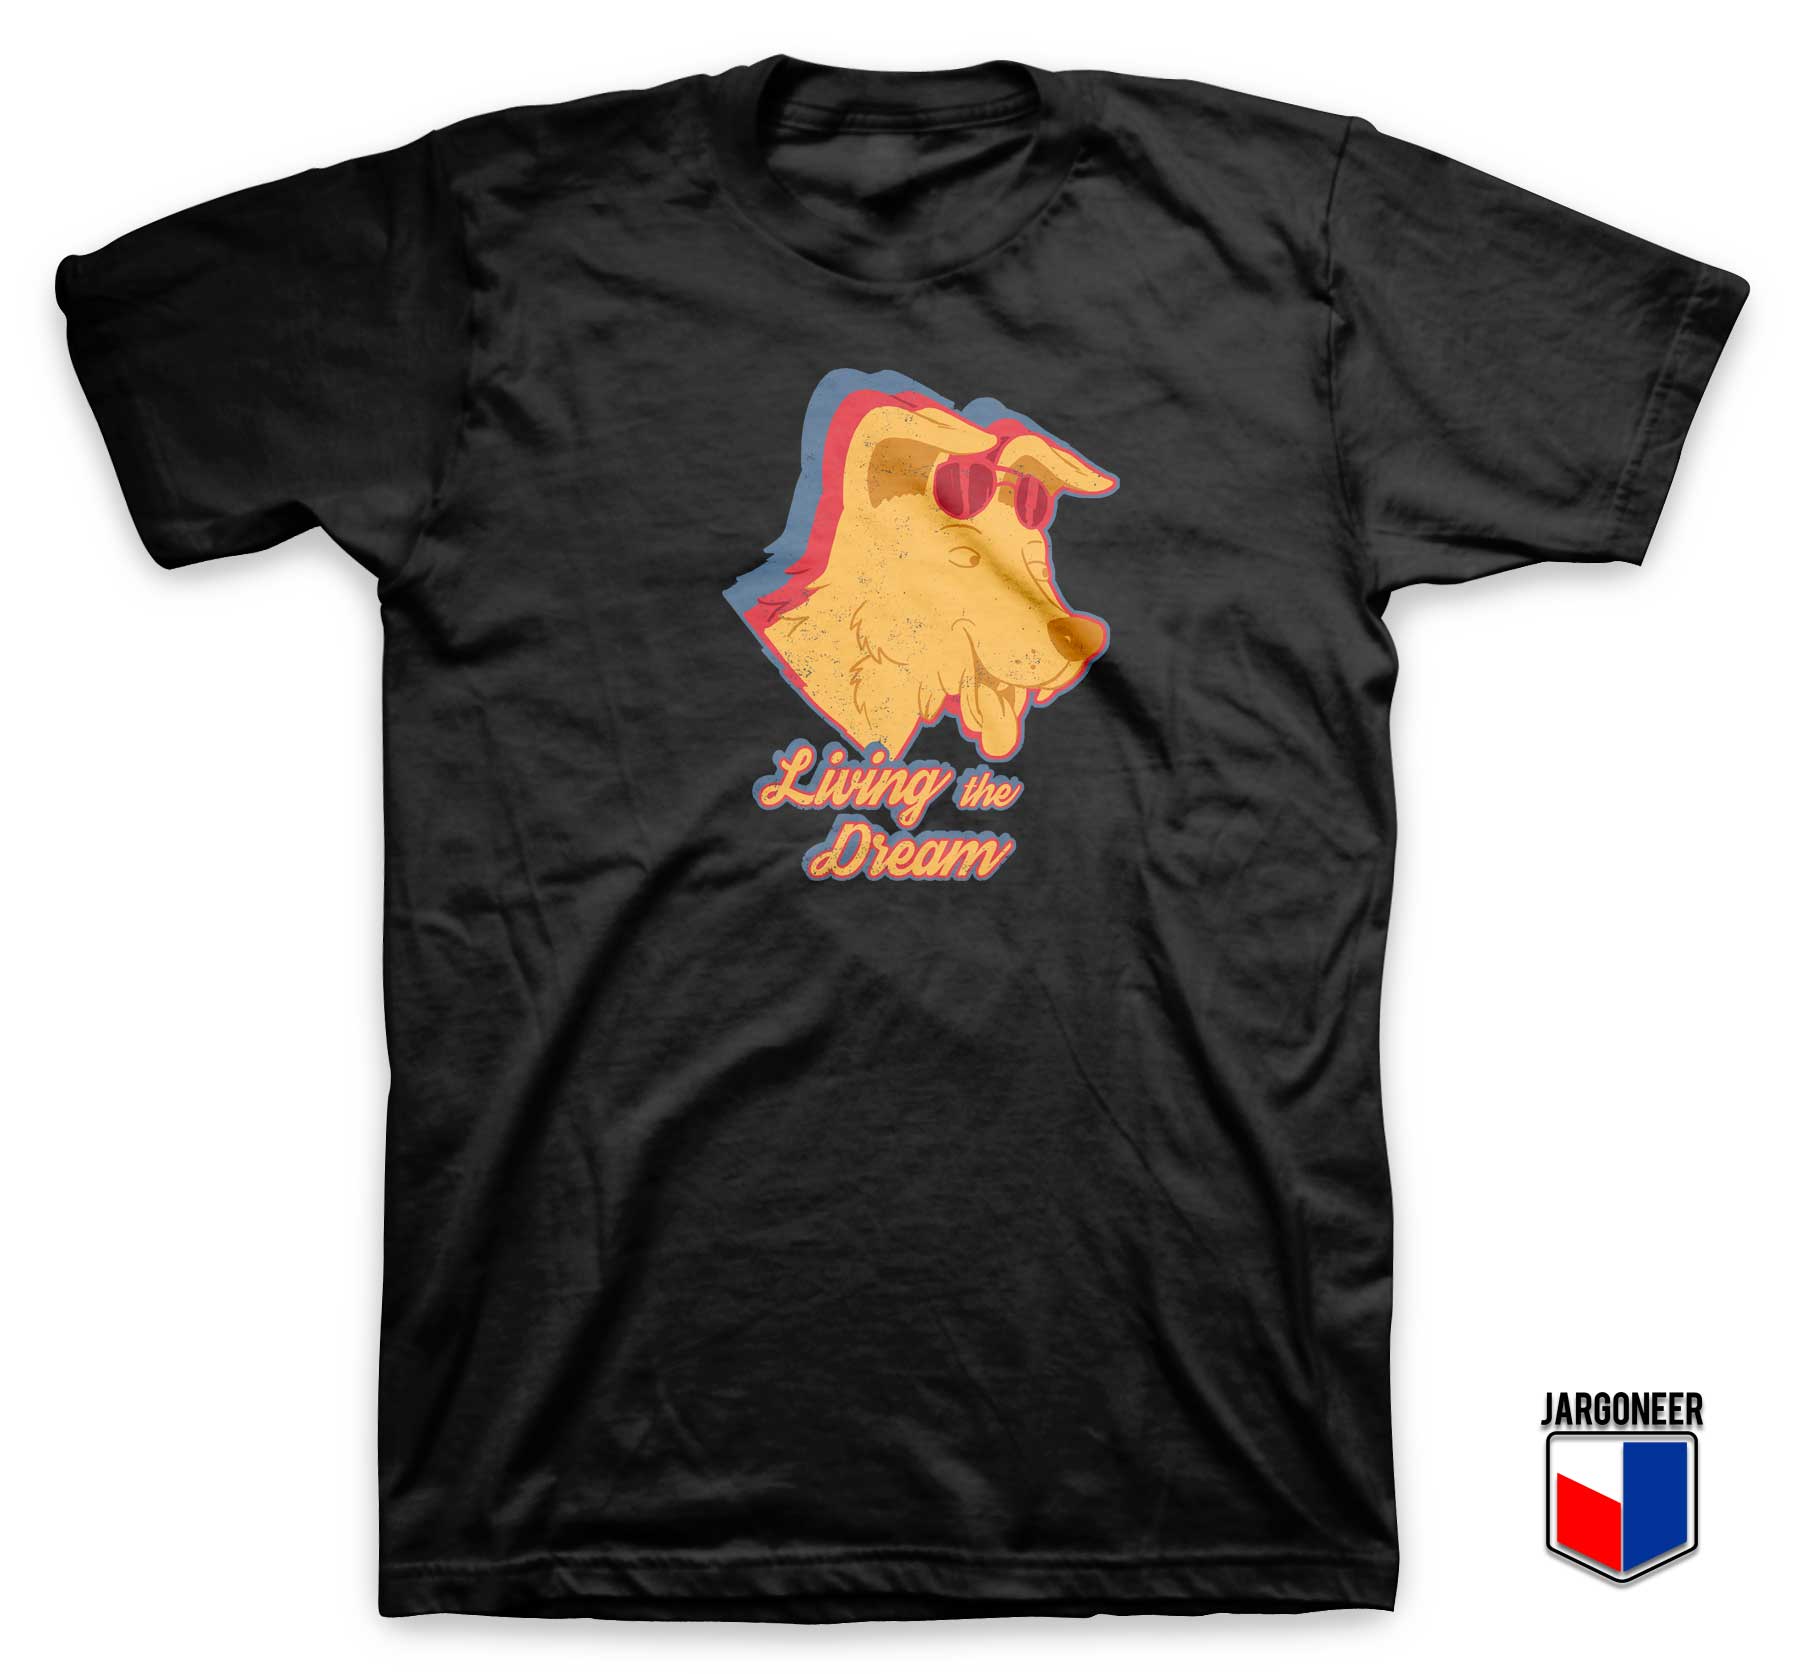 Mr Peanut Butter Living The Dream T Shirt - Shop Unique Graphic Cool Shirt Designs